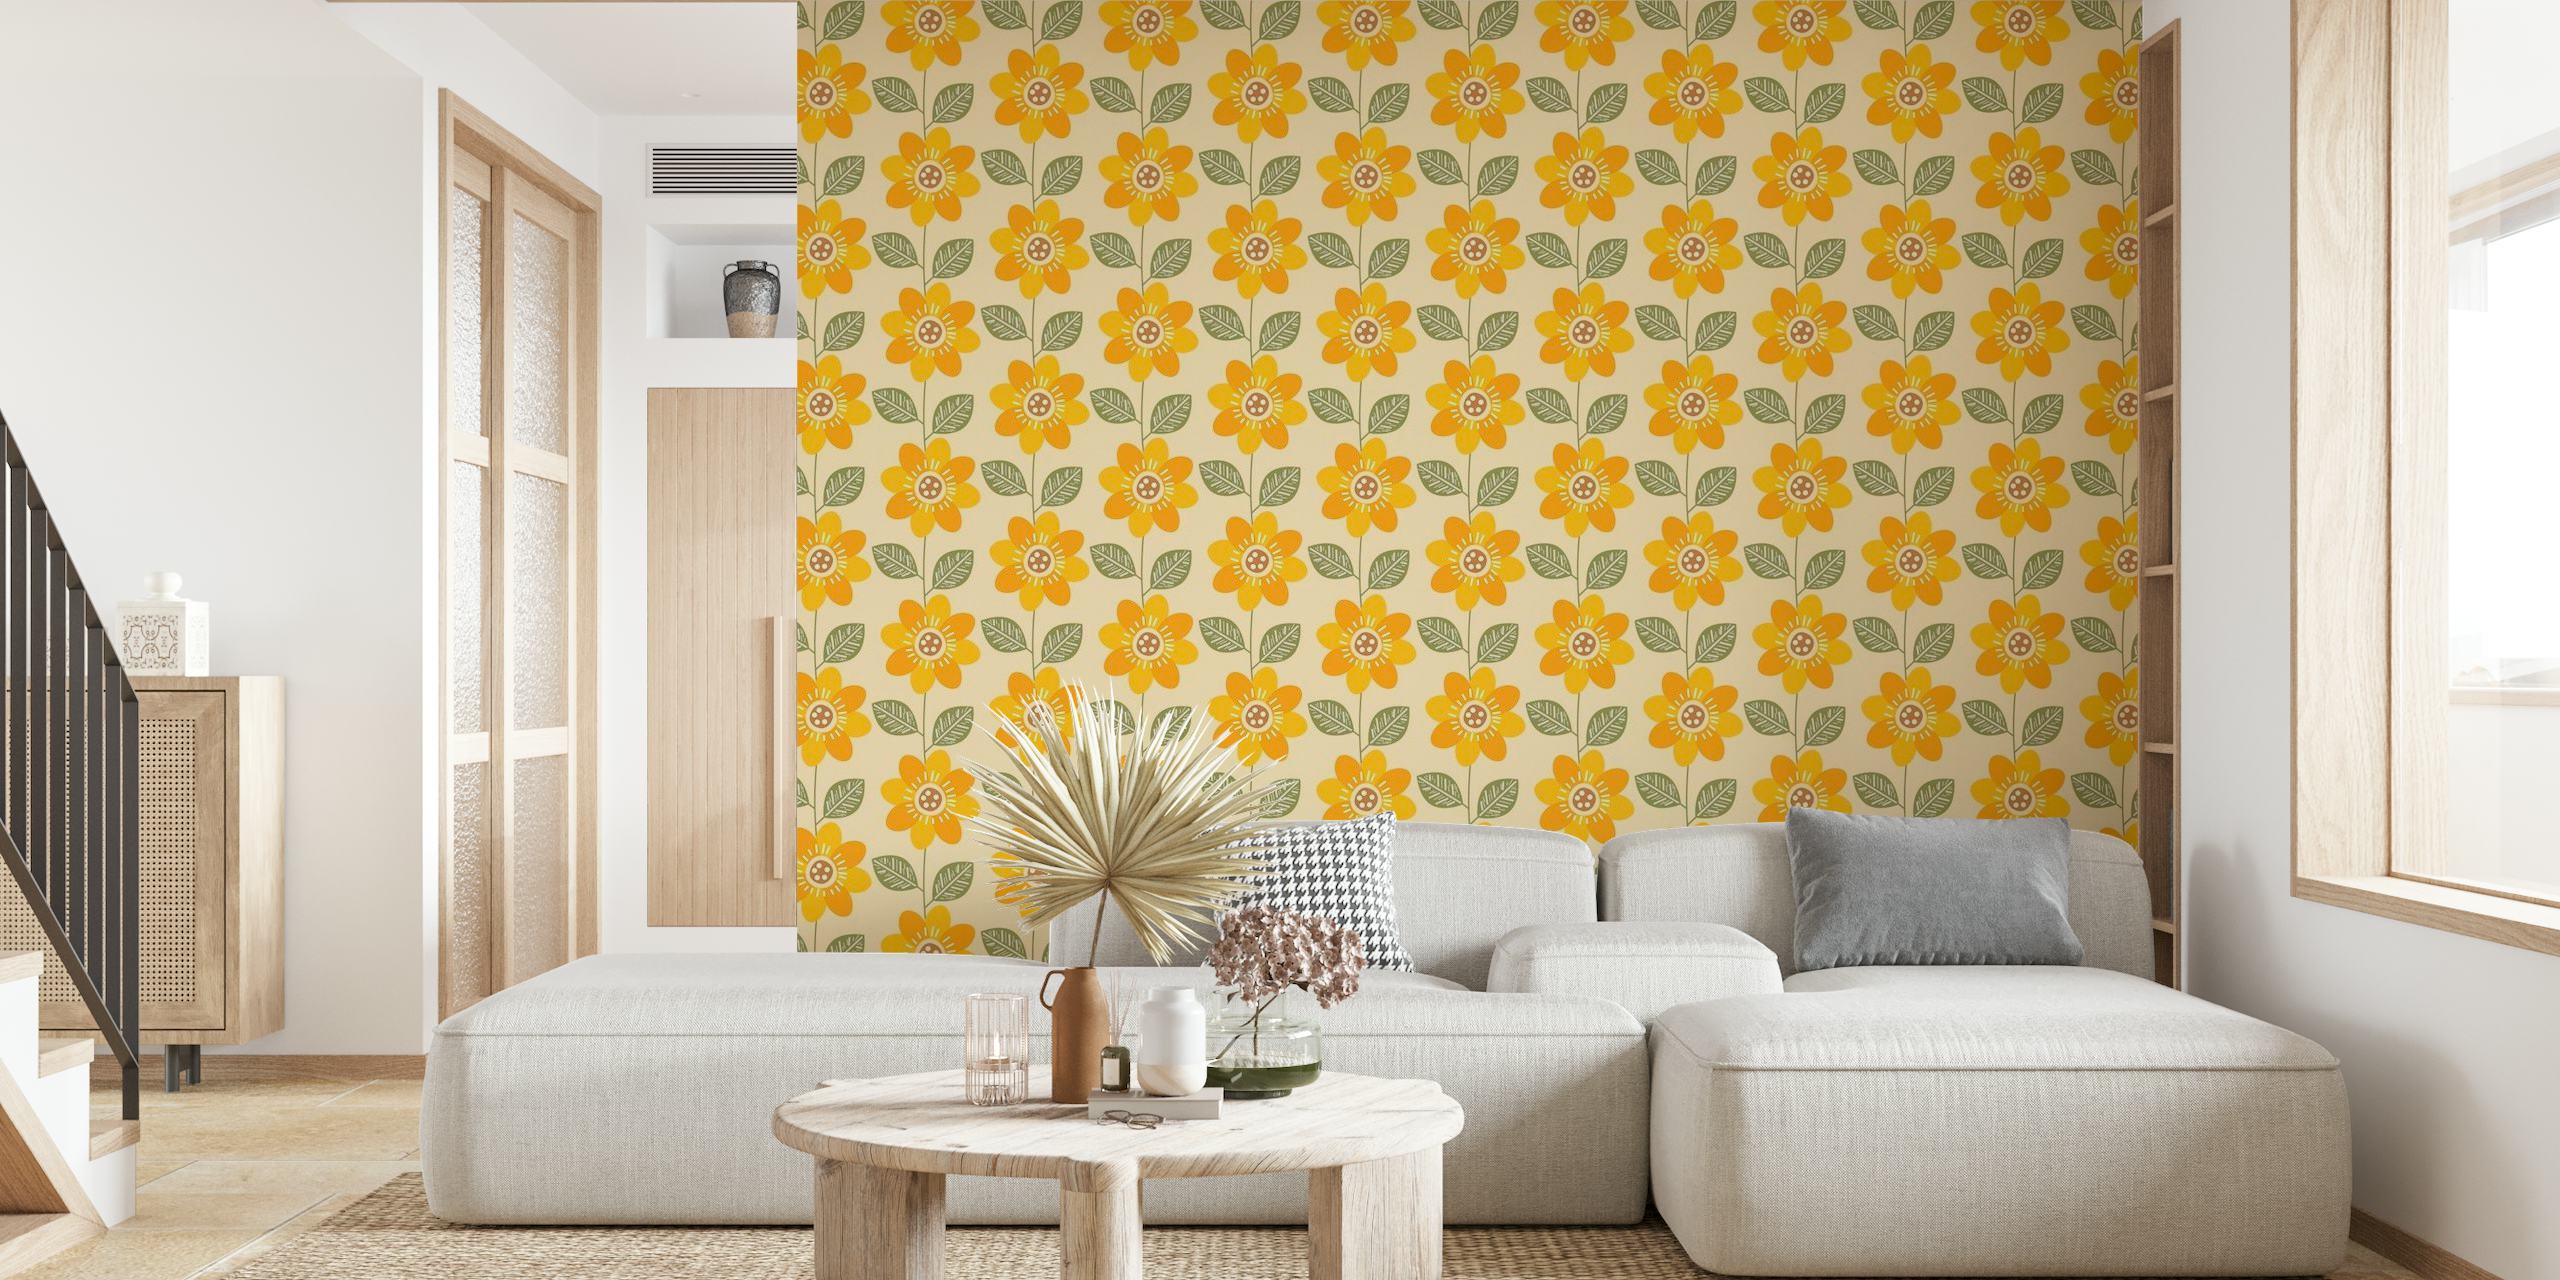 Zidna slika s uzorkom suncokreta sa jarko žutim cvjetovima i zelenim detaljima na neutralnoj pozadini